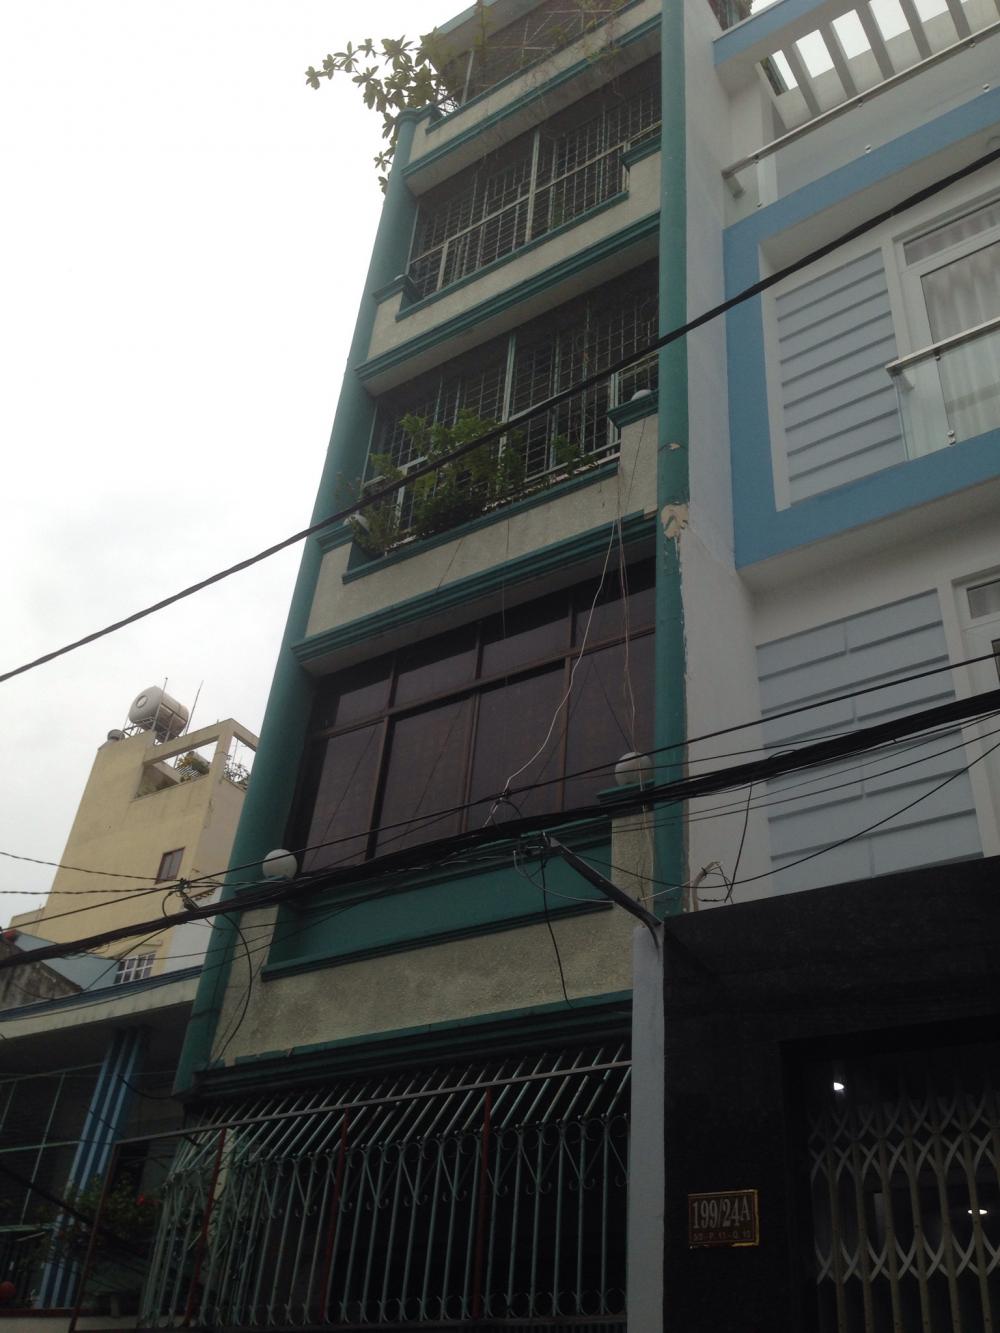 Gia đình cần bán nhanh nhà riêng đường Nguyễn Kim, quận 10. DT: 4*12m. Khu kinh doanh hàng điện máy